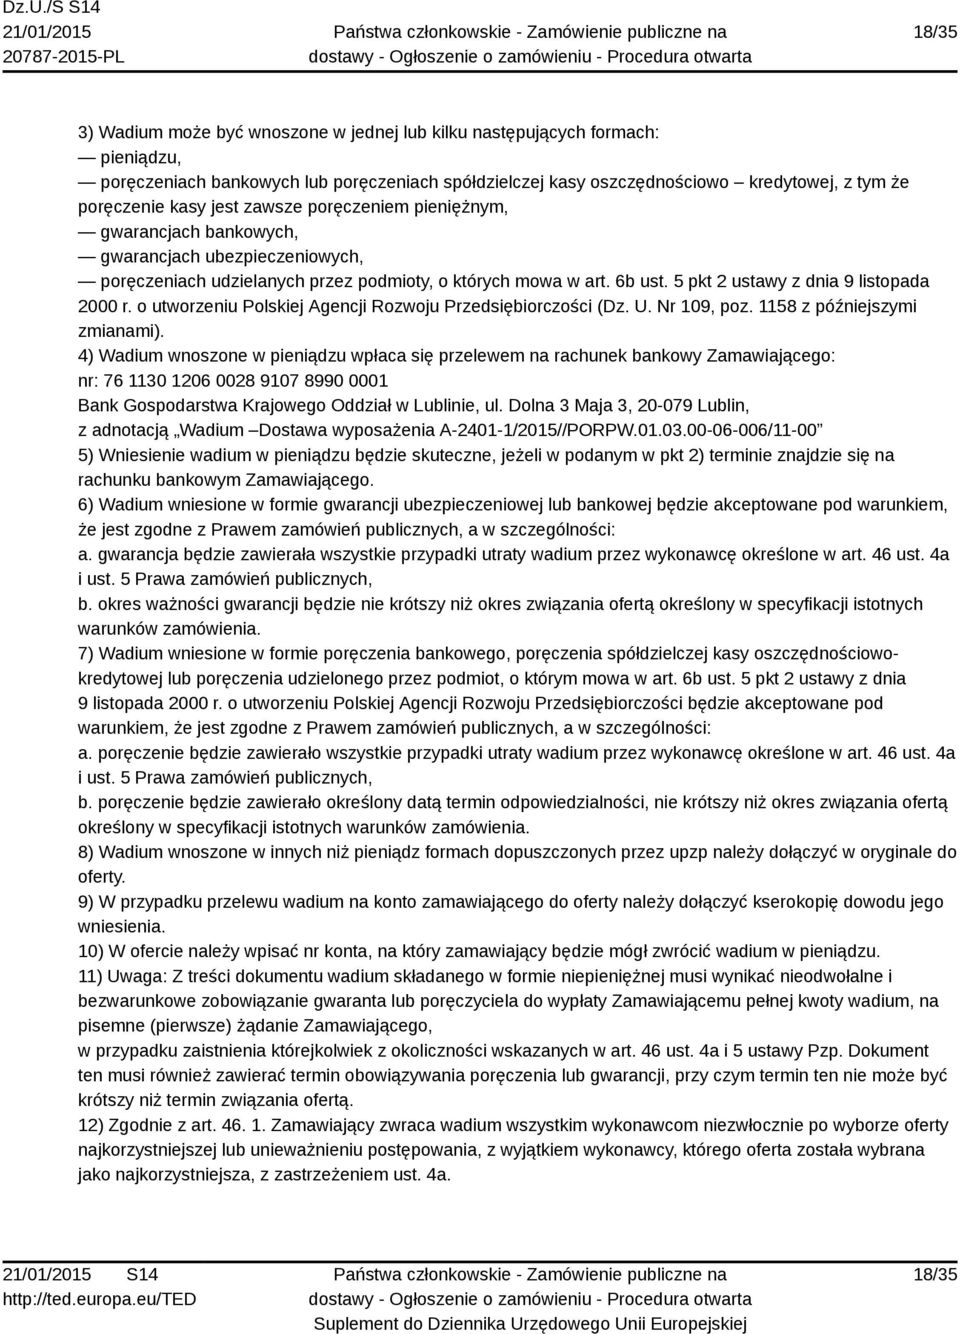 5 pkt 2 ustawy z dnia 9 listopada 2000 r. o utworzeniu Polskiej Agencji Rozwoju Przedsiębiorczości (Dz. U. Nr 109, poz. 1158 z późniejszymi zmianami).